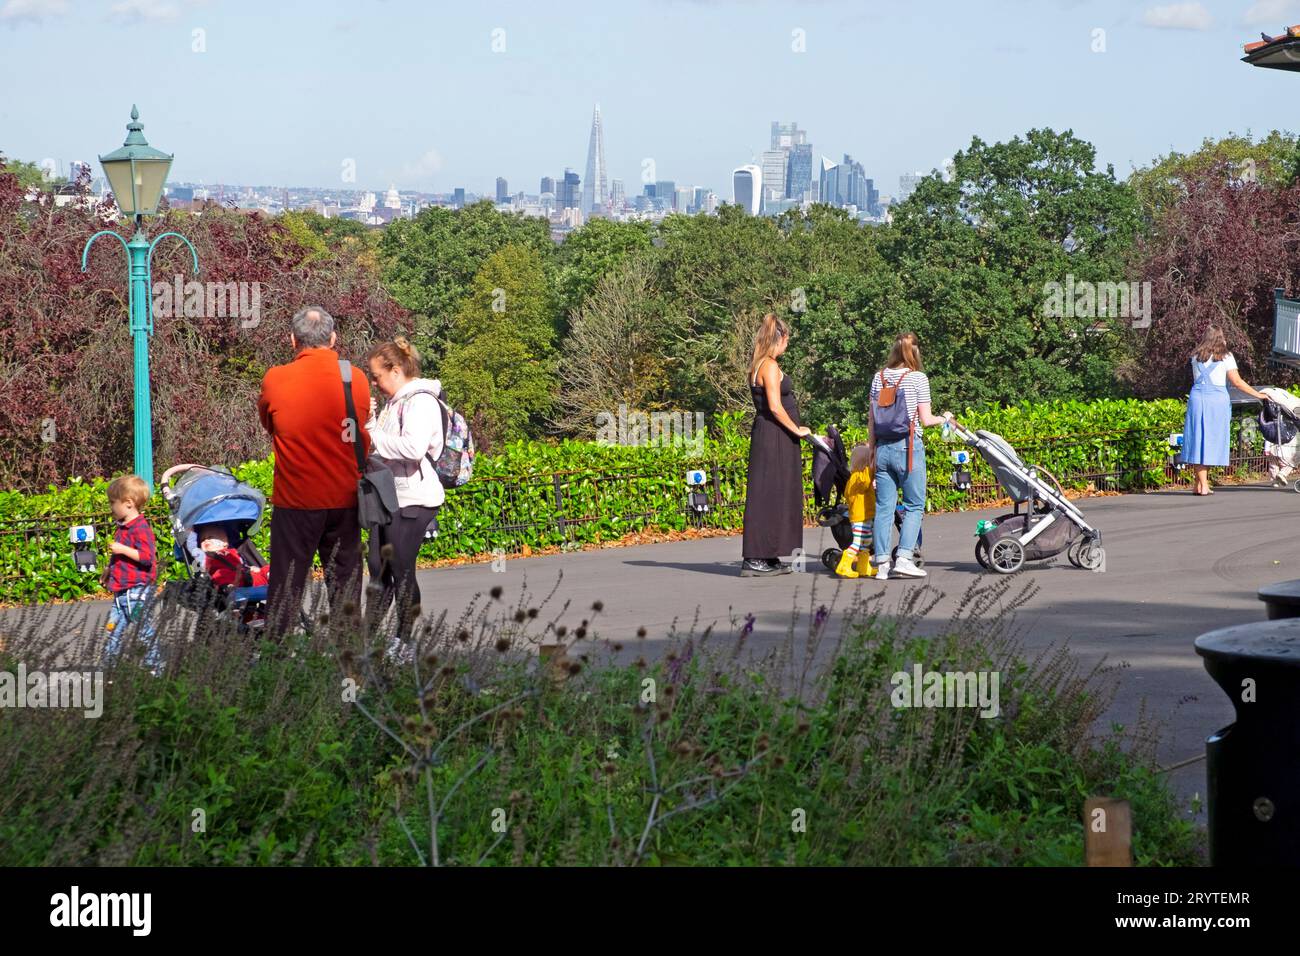 Menschen Mütter mit Kinderwagen Kinder Spaziergänge in Horniman Museum Gardens Herbst Bandstand Terrace alte Eiche London England Großbritannien KATHY DEWITT Stockfoto